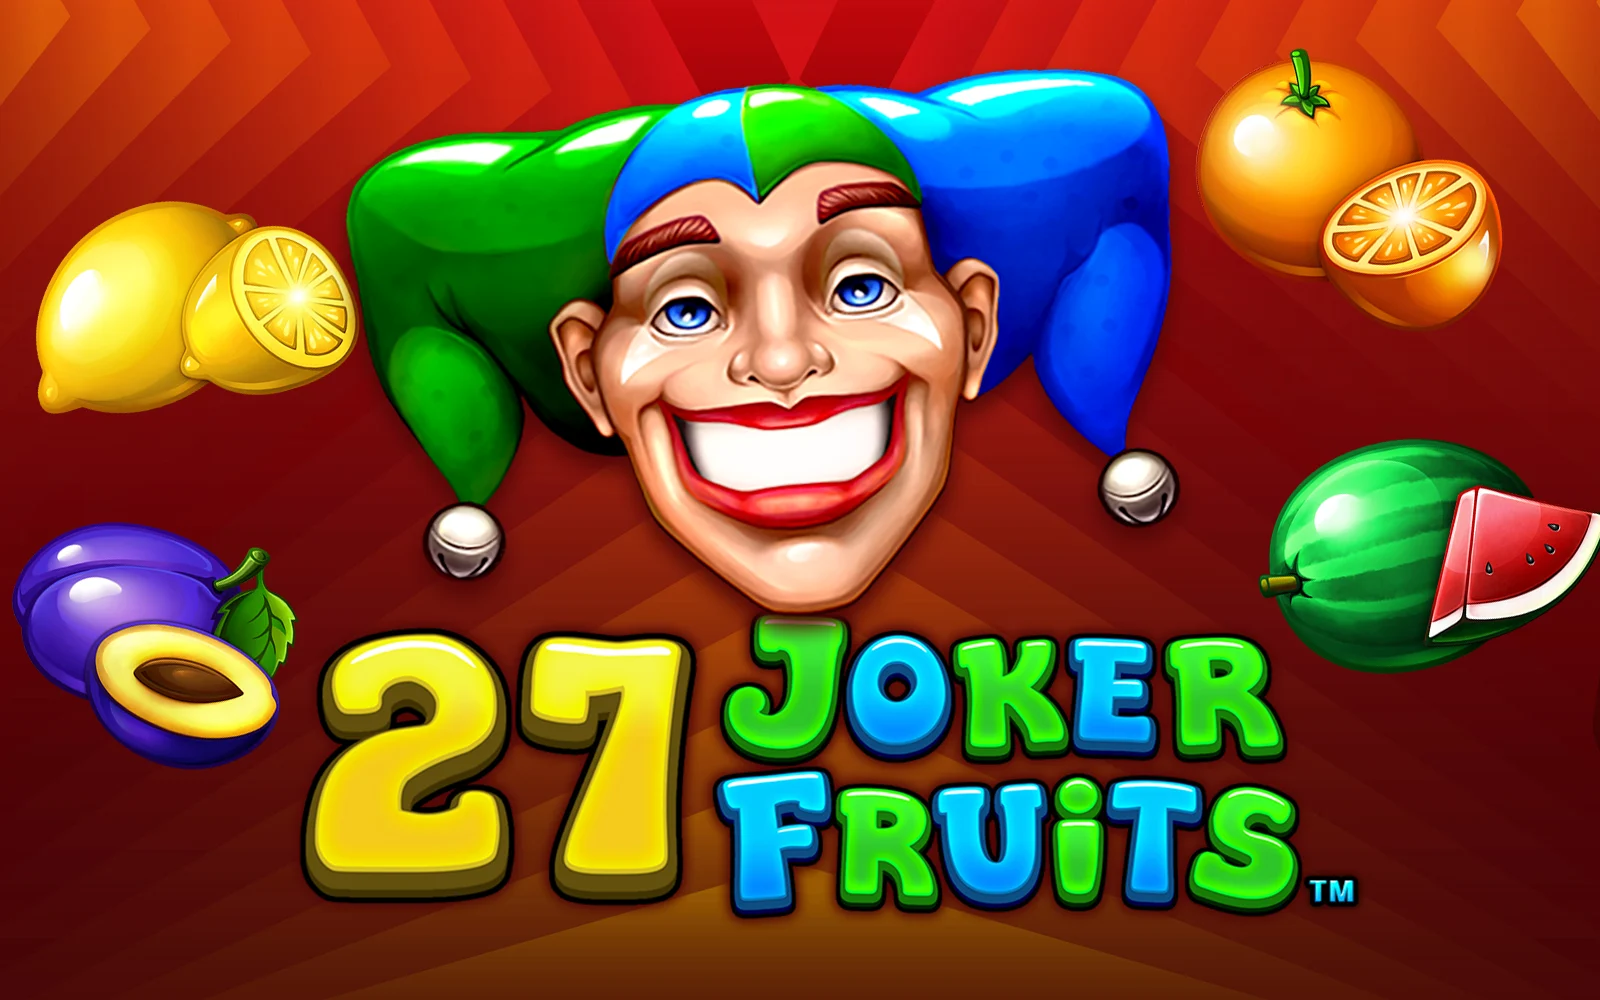 Speel 27 Joker Fruits op Starcasino.be online casino